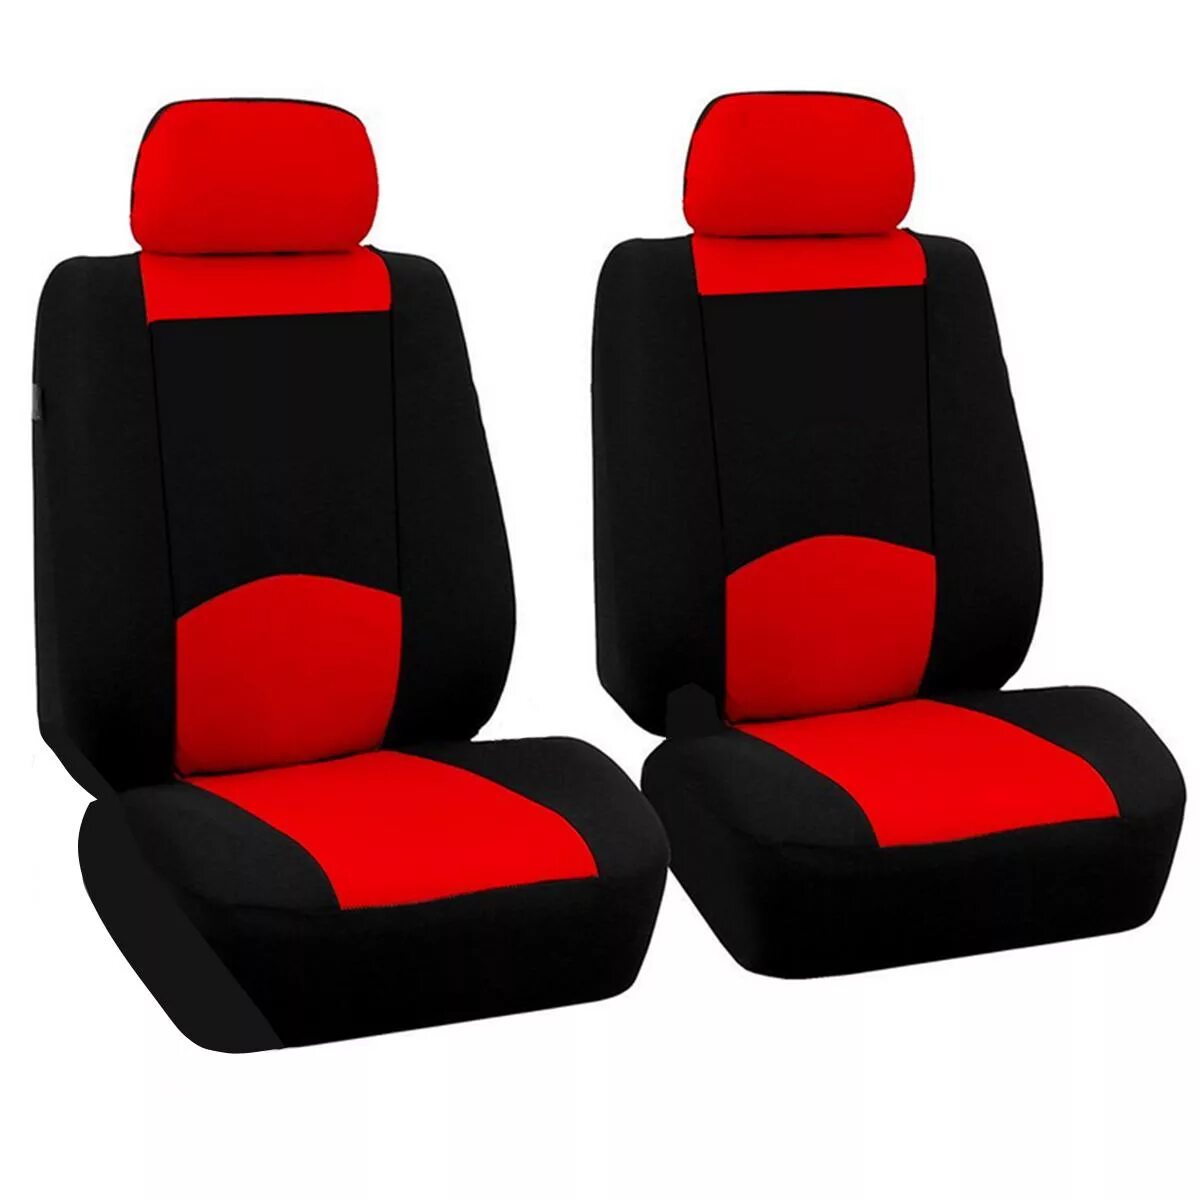 Чехол для автомобиля. TRS-002g BK/BL. XTR-803 BK/BL (M). Чехлы Universal car Seat Cover. Леомакс автомобильные чехлы универсальные.